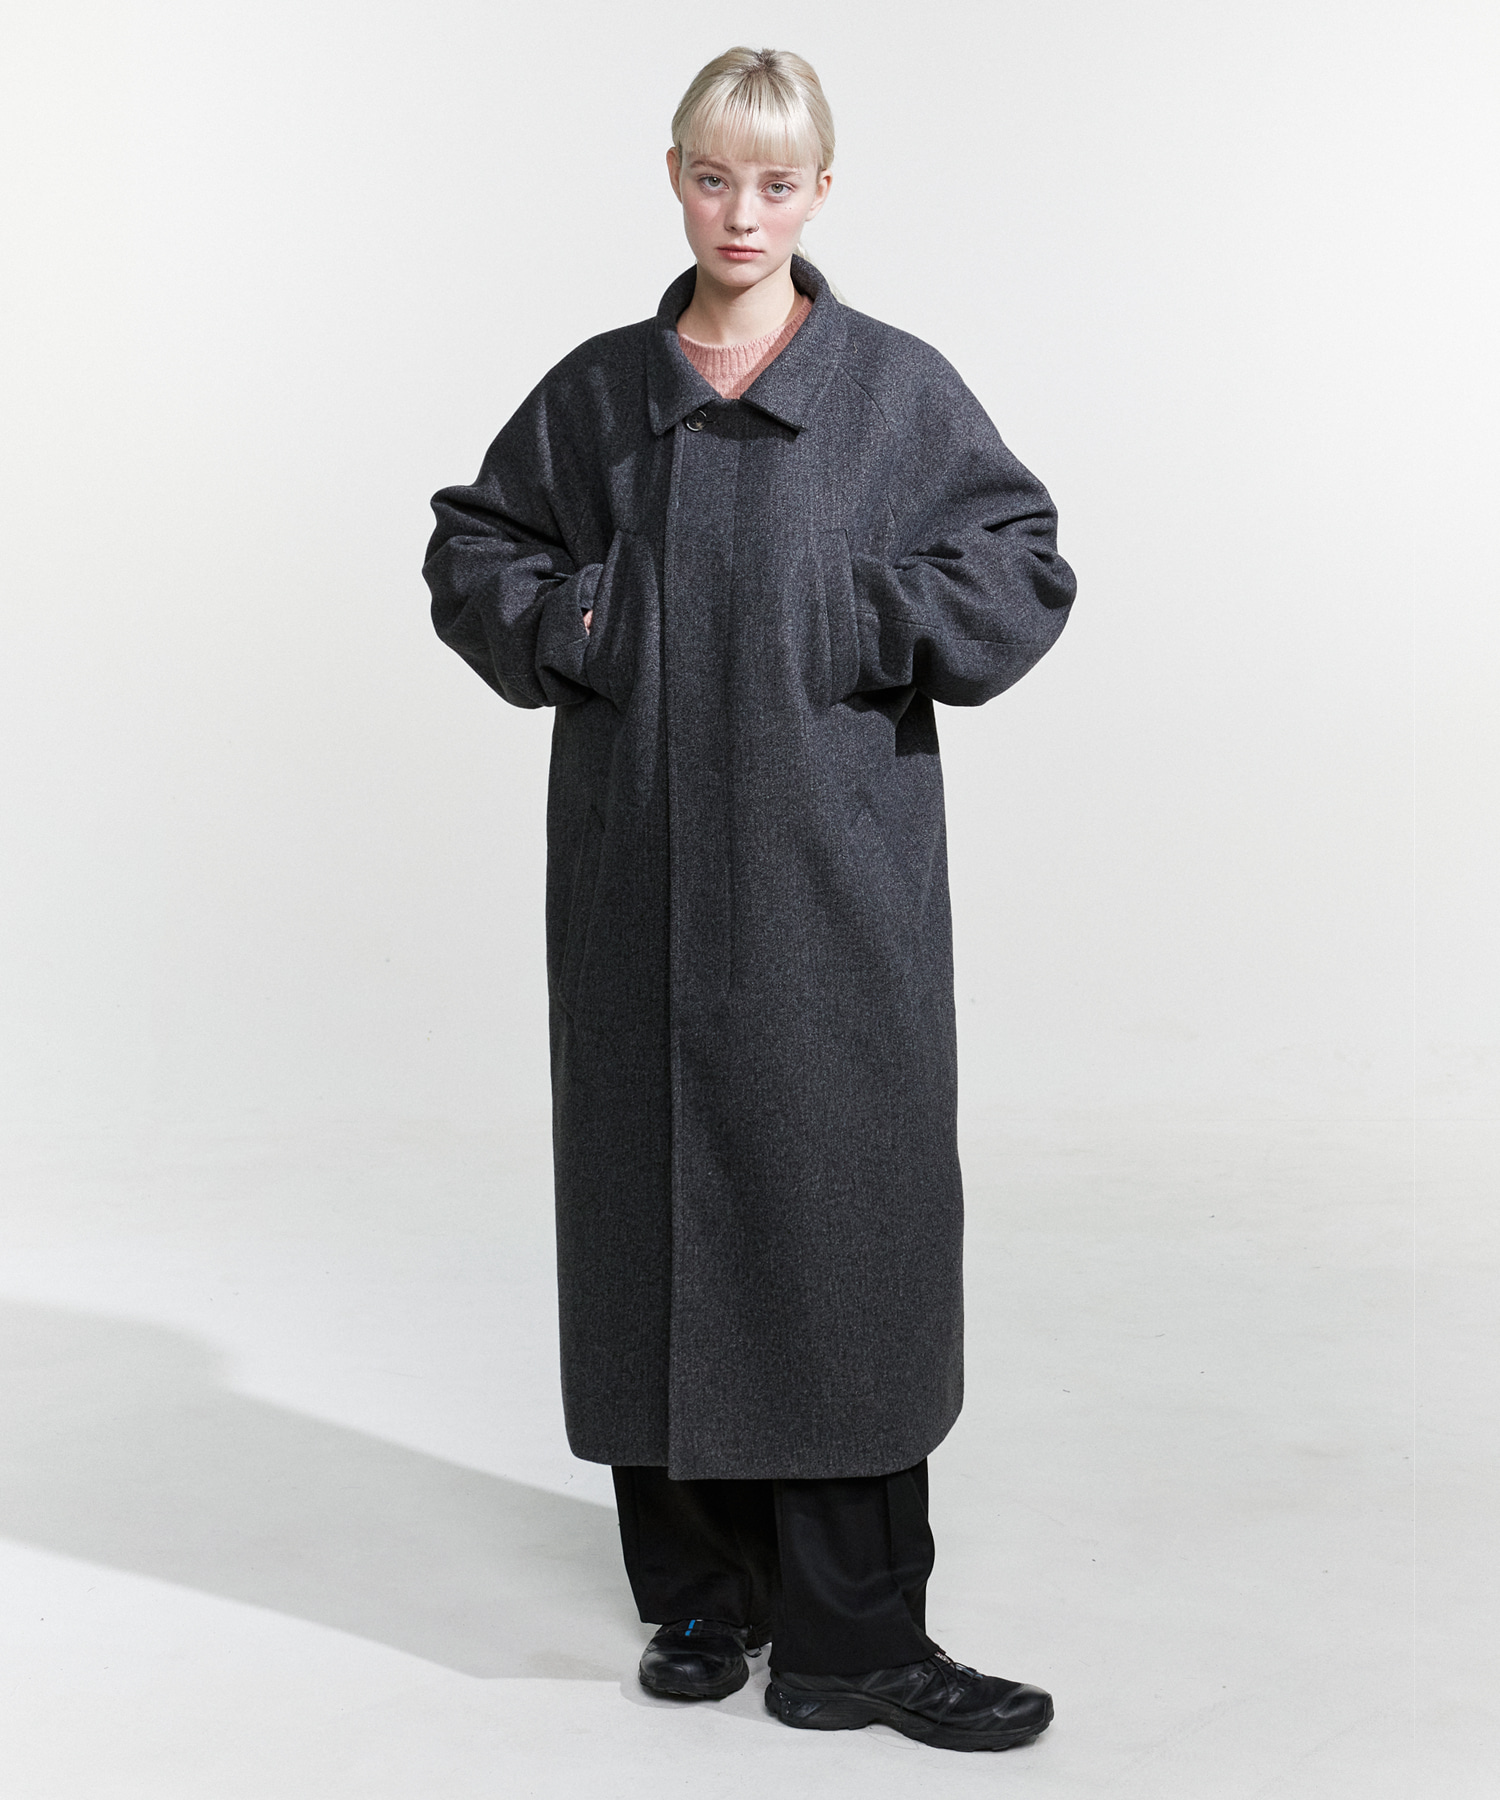 NOI785 overfit long coat (charcoal)